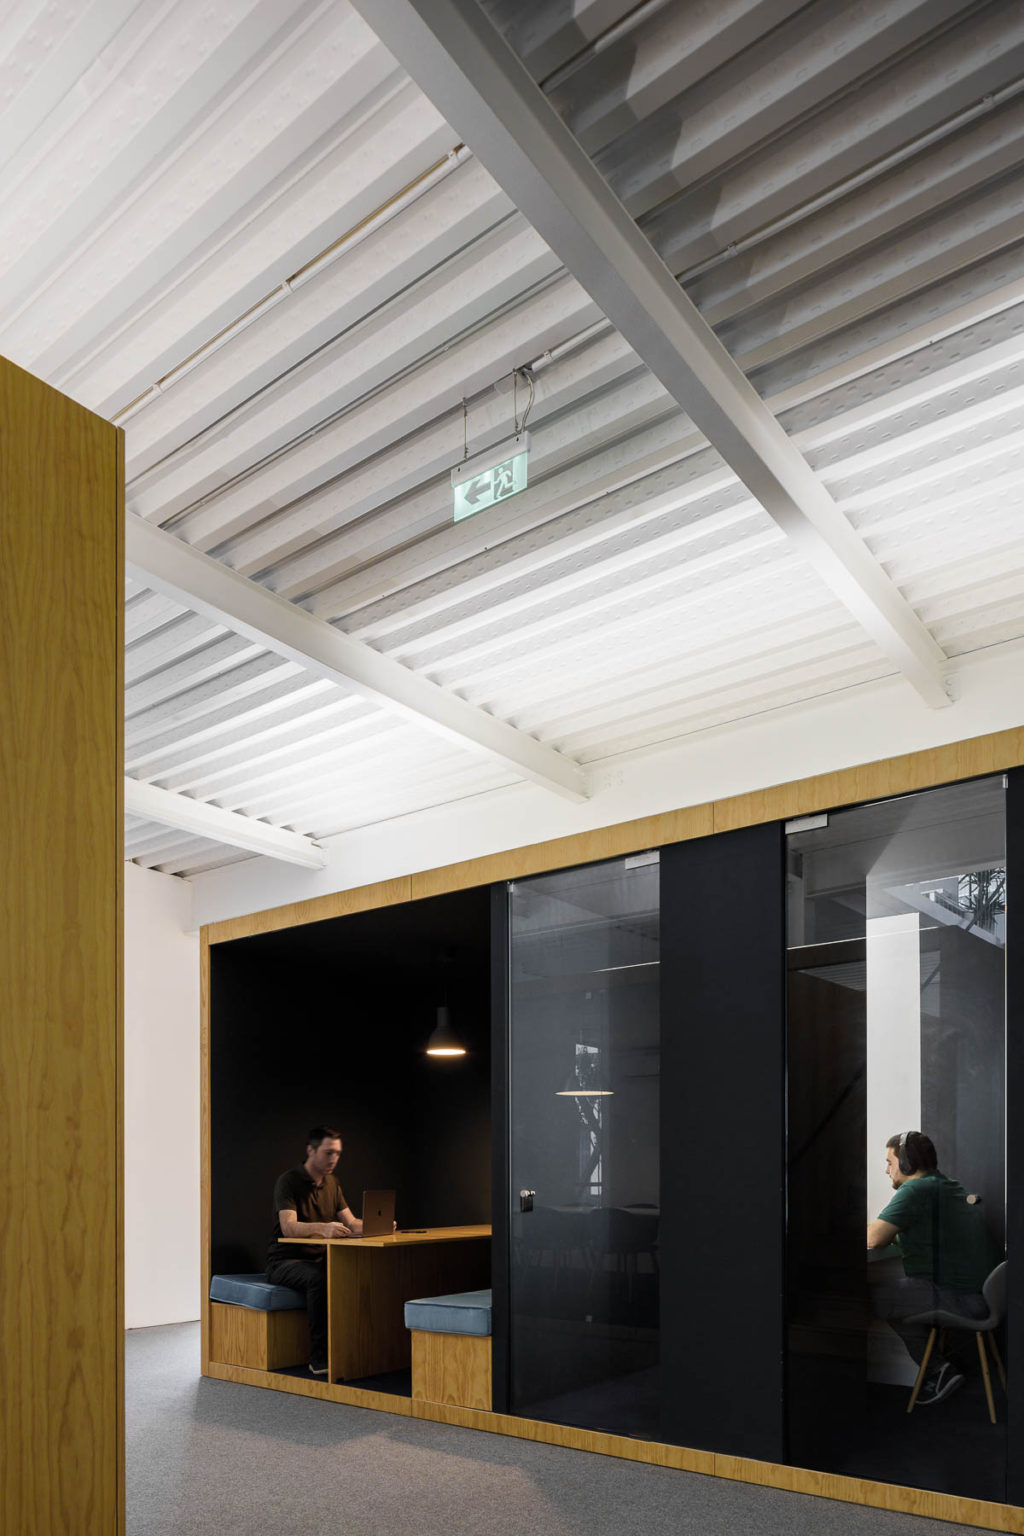 Ανάμεσα στο φυσικό φως και την ευελιξία τα νέα κεντρικά γραφεία EGOI και CLAVELS KITCHEN. PAULO MERLINI αρχιτέκτονες. Φωτογραφία Ivo Tavares Studio